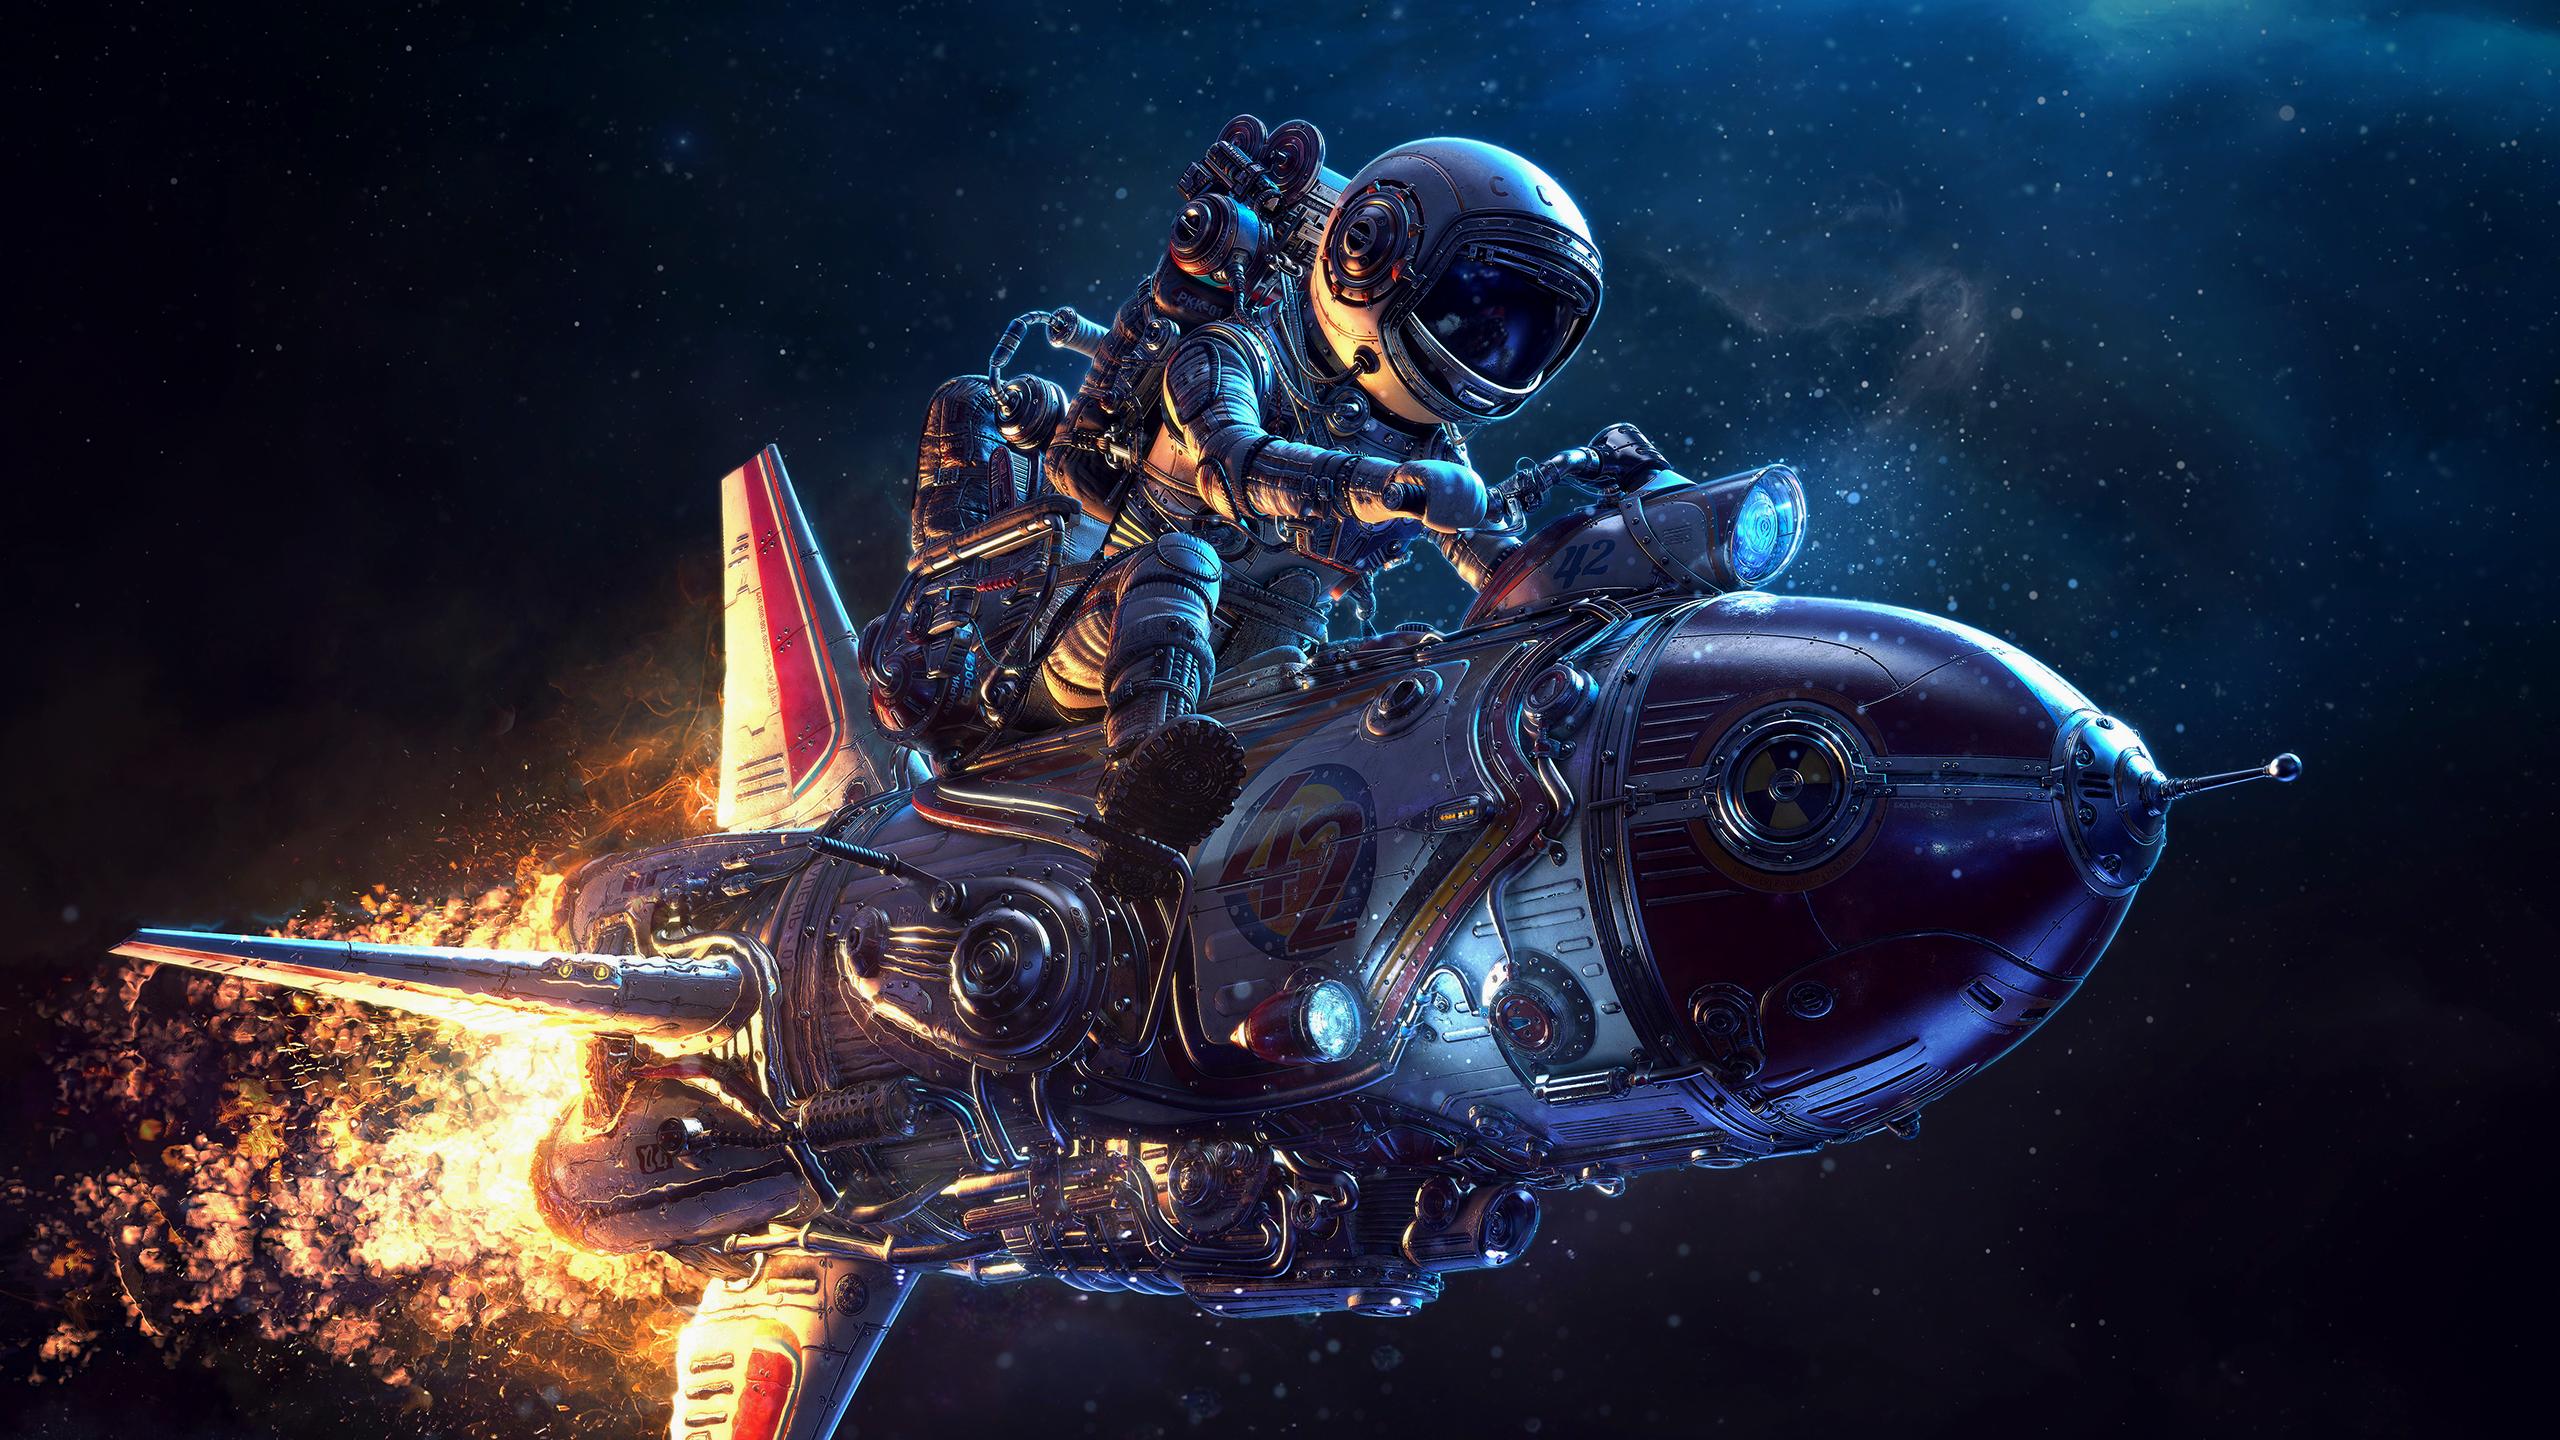 Motorcycle Rocketship (2560x1440)